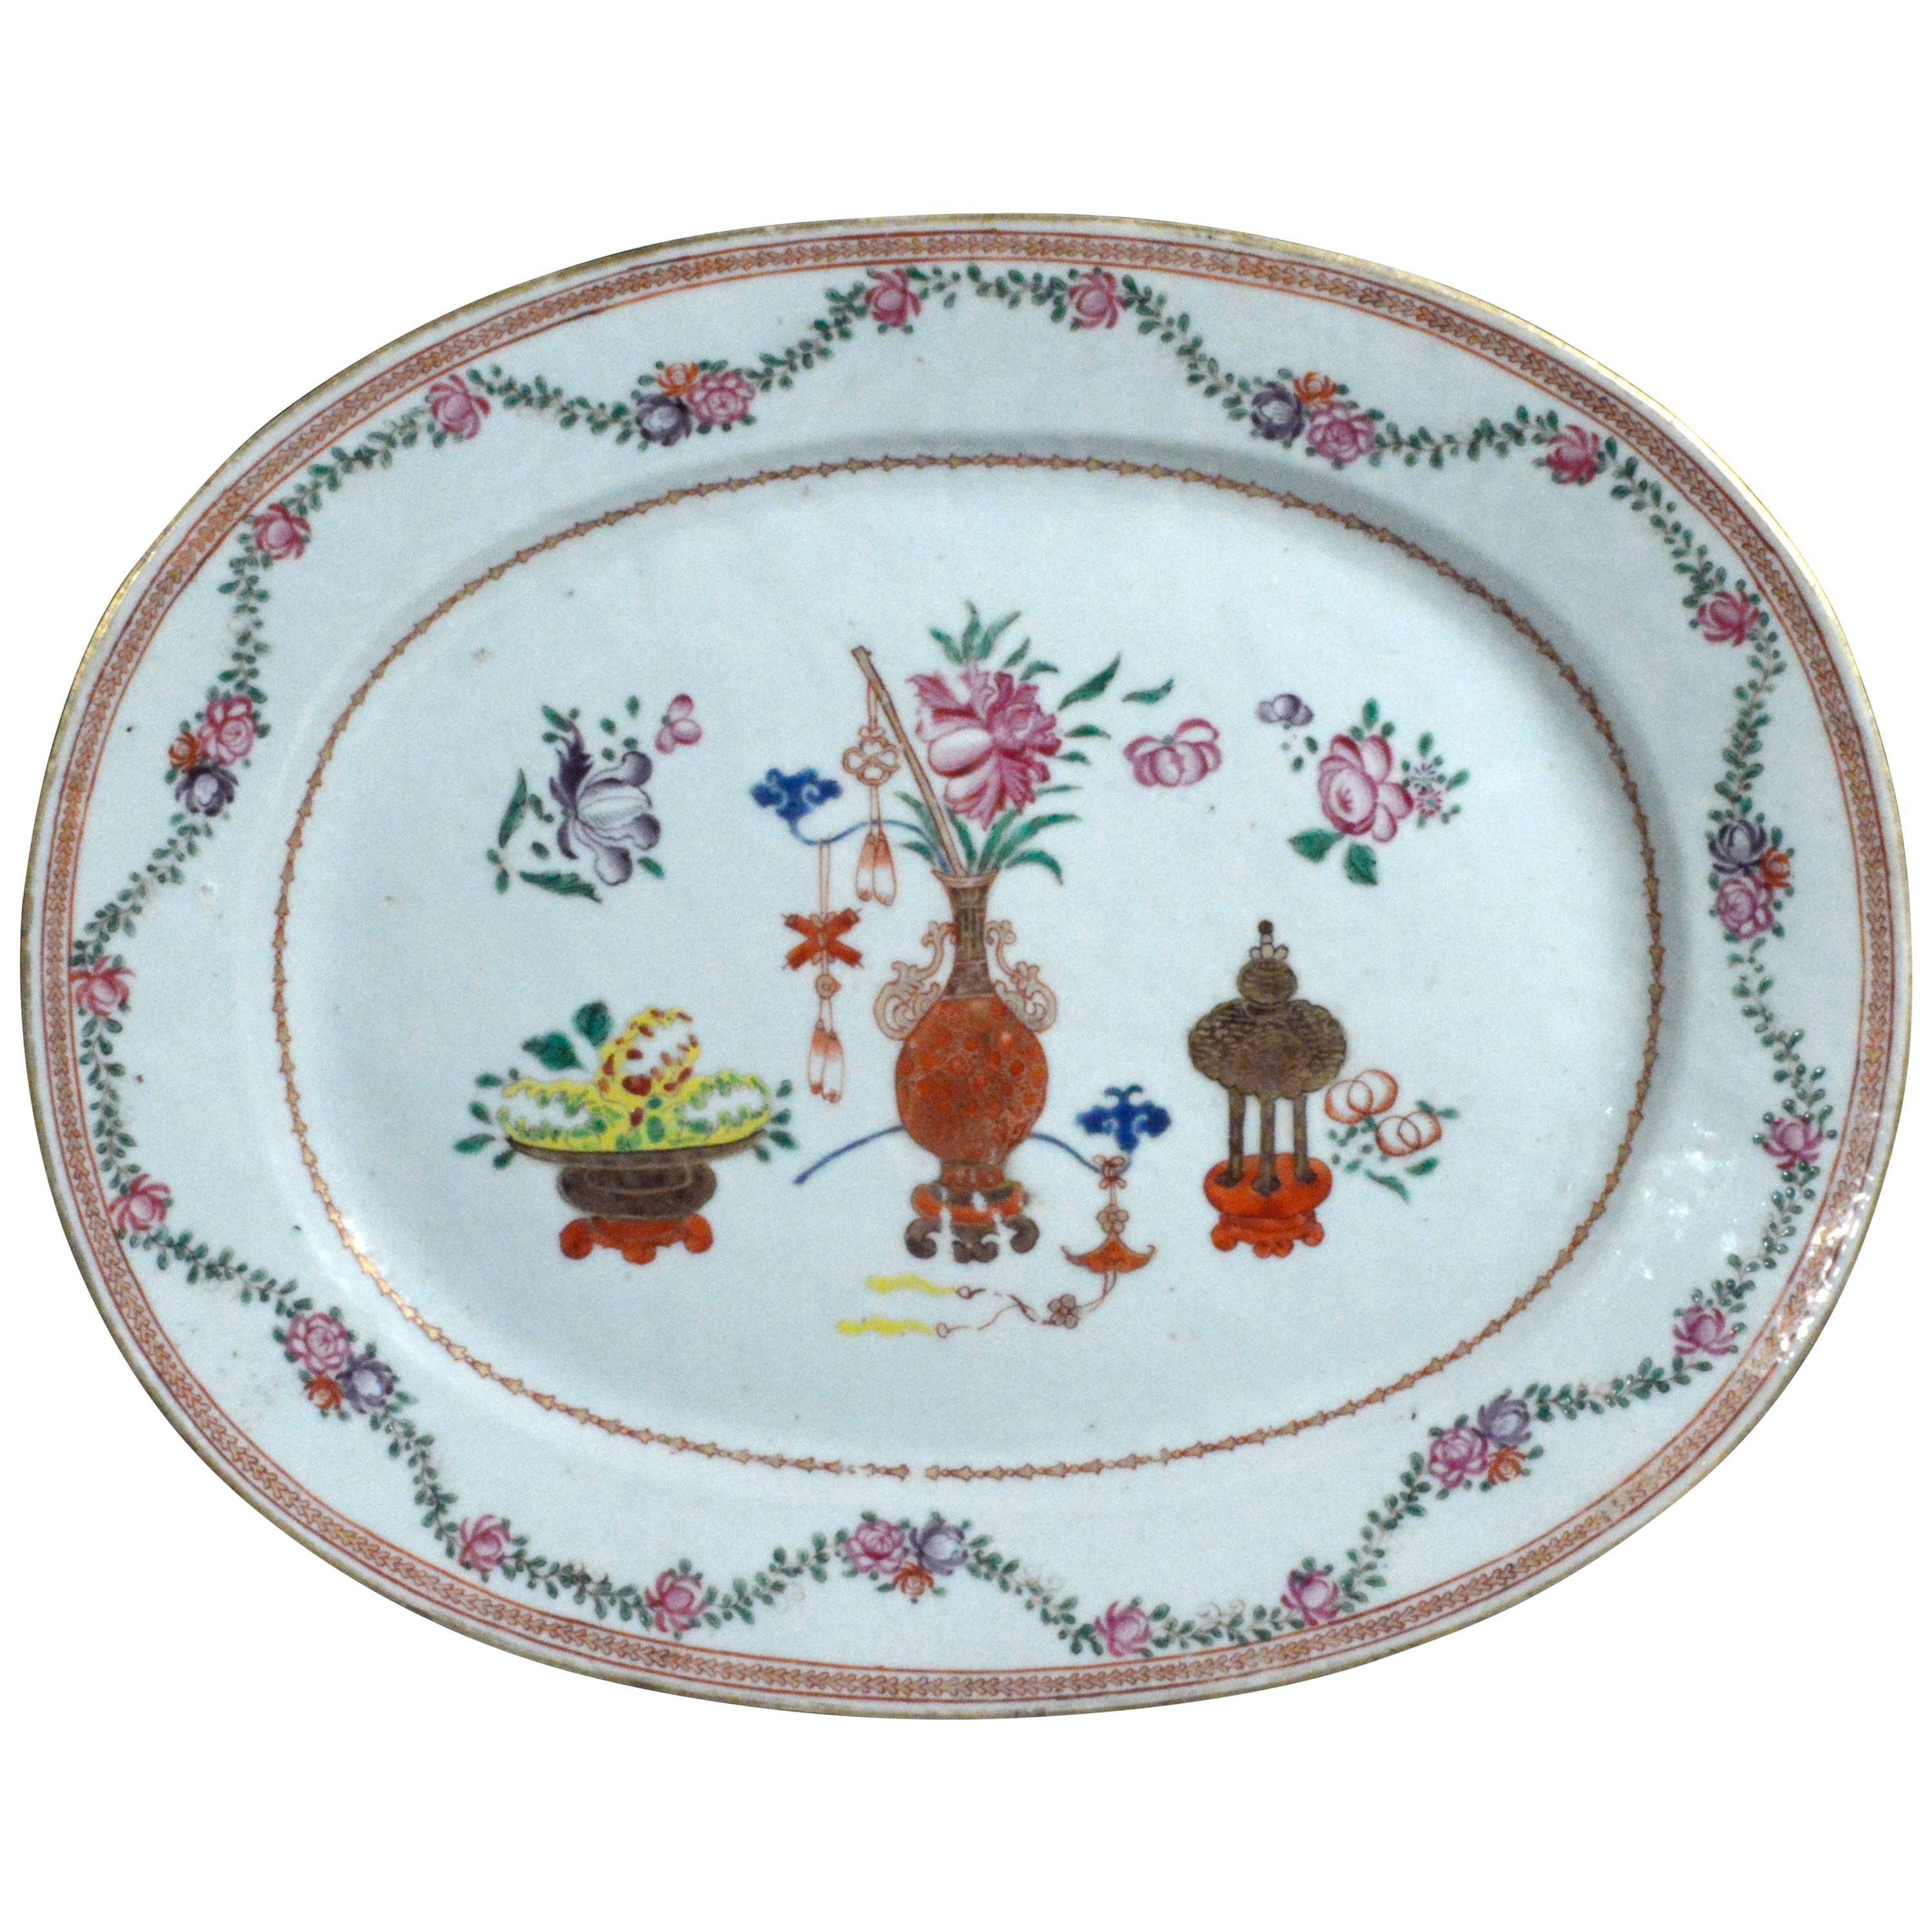 Ce plat en porcelaine d'exportation chinoise dans la palette de la famille rose est peint sur la bordure de vignes et de fleurs sinueuses qui entourent un panneau central décoré de vases et de pots de fleurs.
   